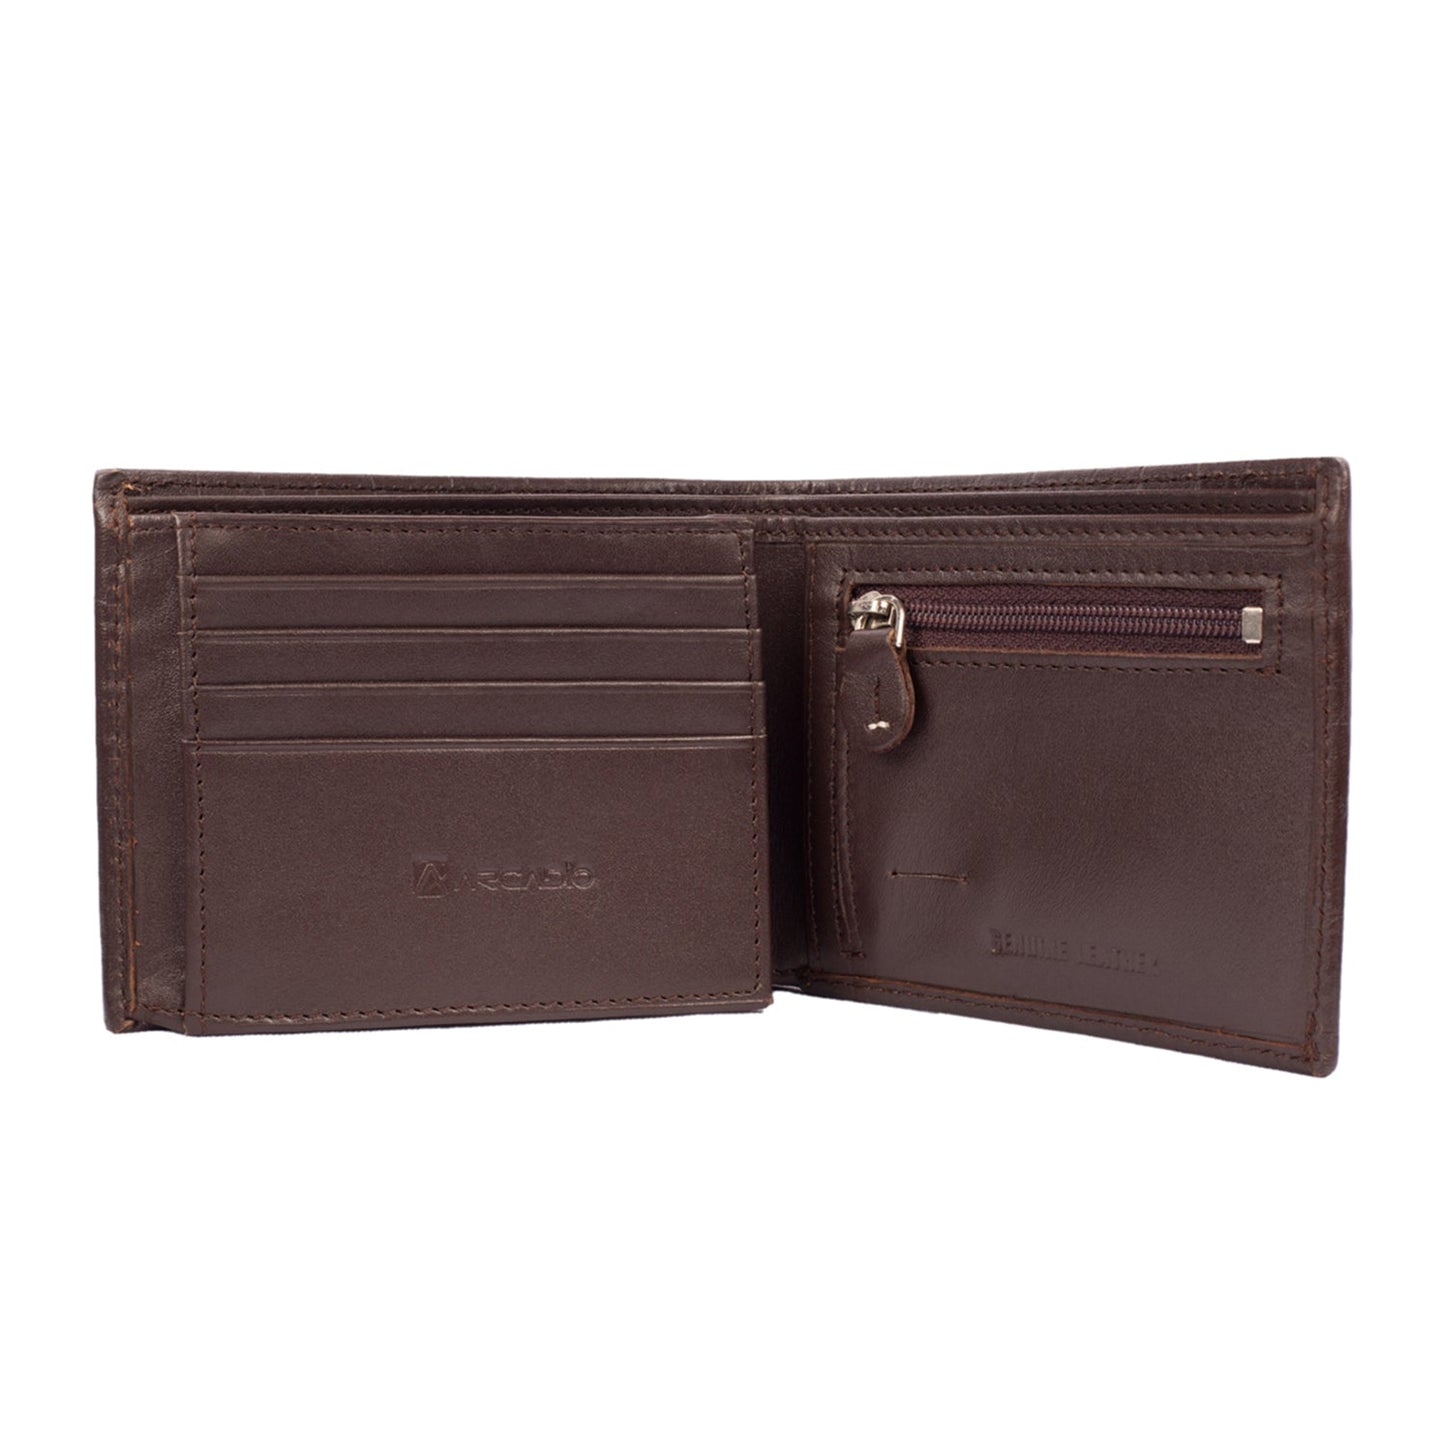 CROCK ‘N’ ROLL Leather Wallet ARW1003BR ARCADIO